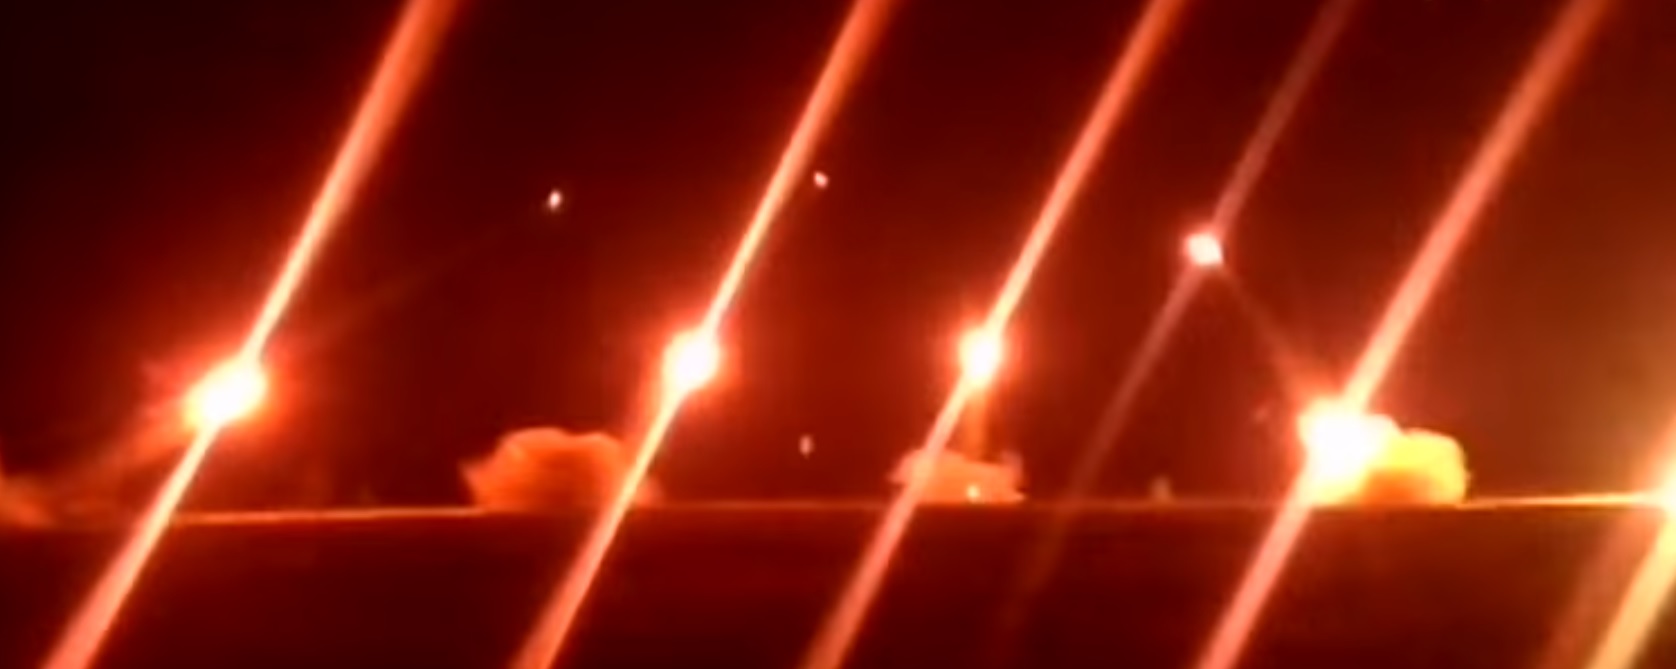 Τα ρωσικά ρουκετοβόλα ΒΜ-21 «άναψαν» τη νύχτα σε άσκηση του πυροβολικού [βίντεο]